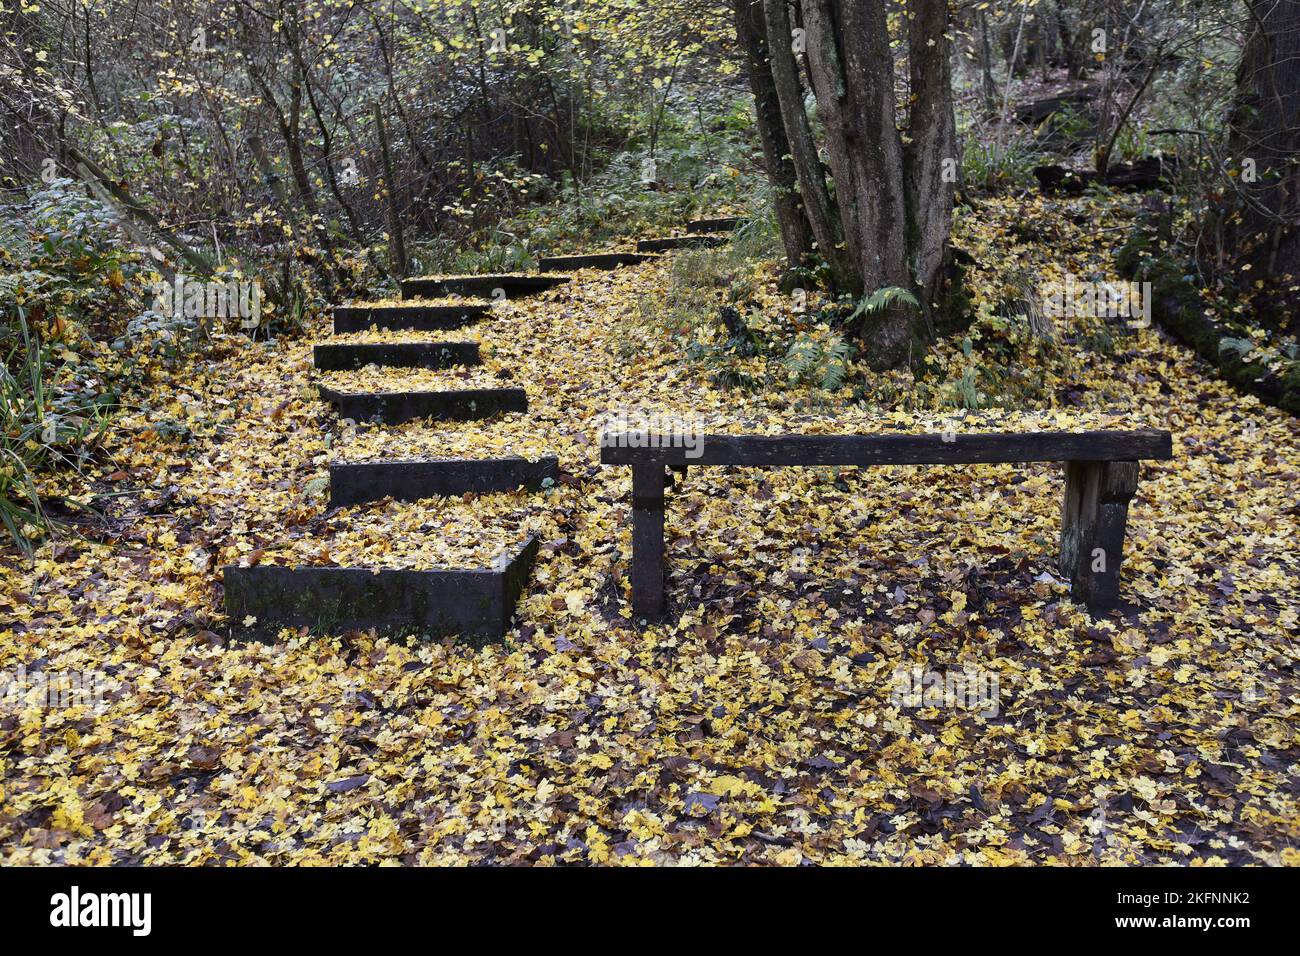 Die Herbstblätter bedecken den Waldboden entlang der Benthall Woods in der Severn Gorge, Ironbridge. Herbstteppich Naturteppich Kredit: Dave Bagnall Stockfoto